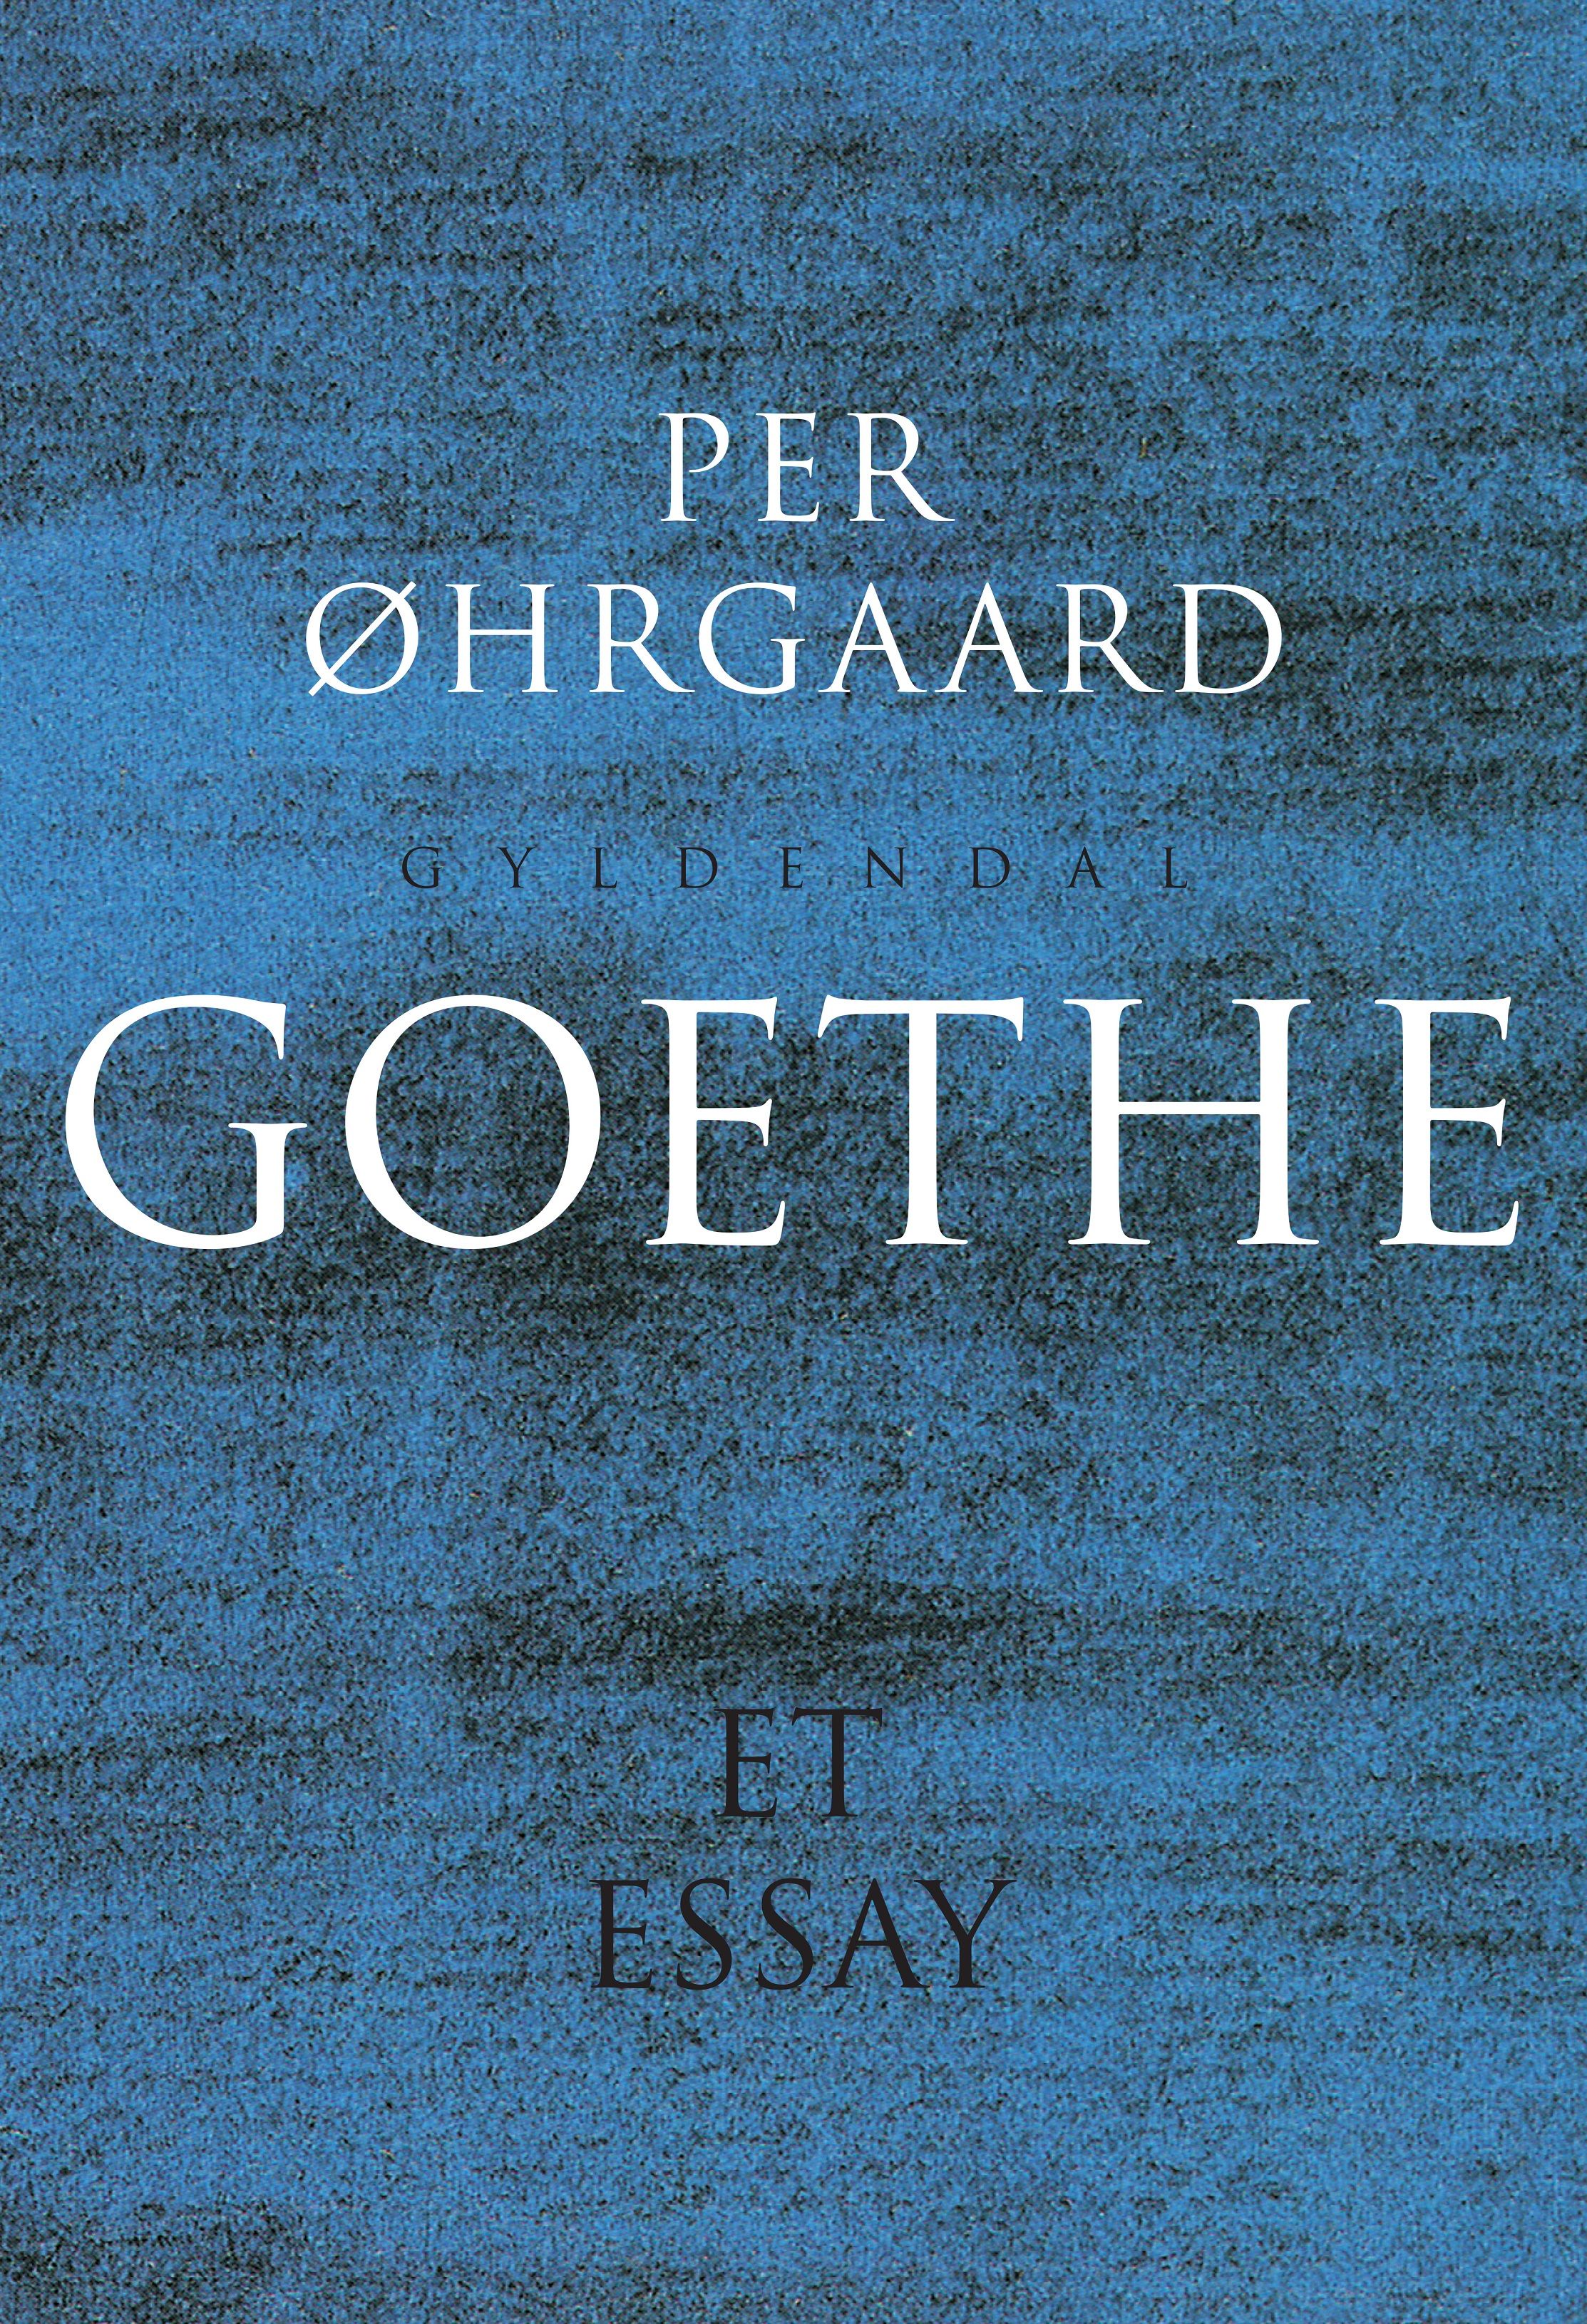 Goethe, eBook by Per Øhrgaard